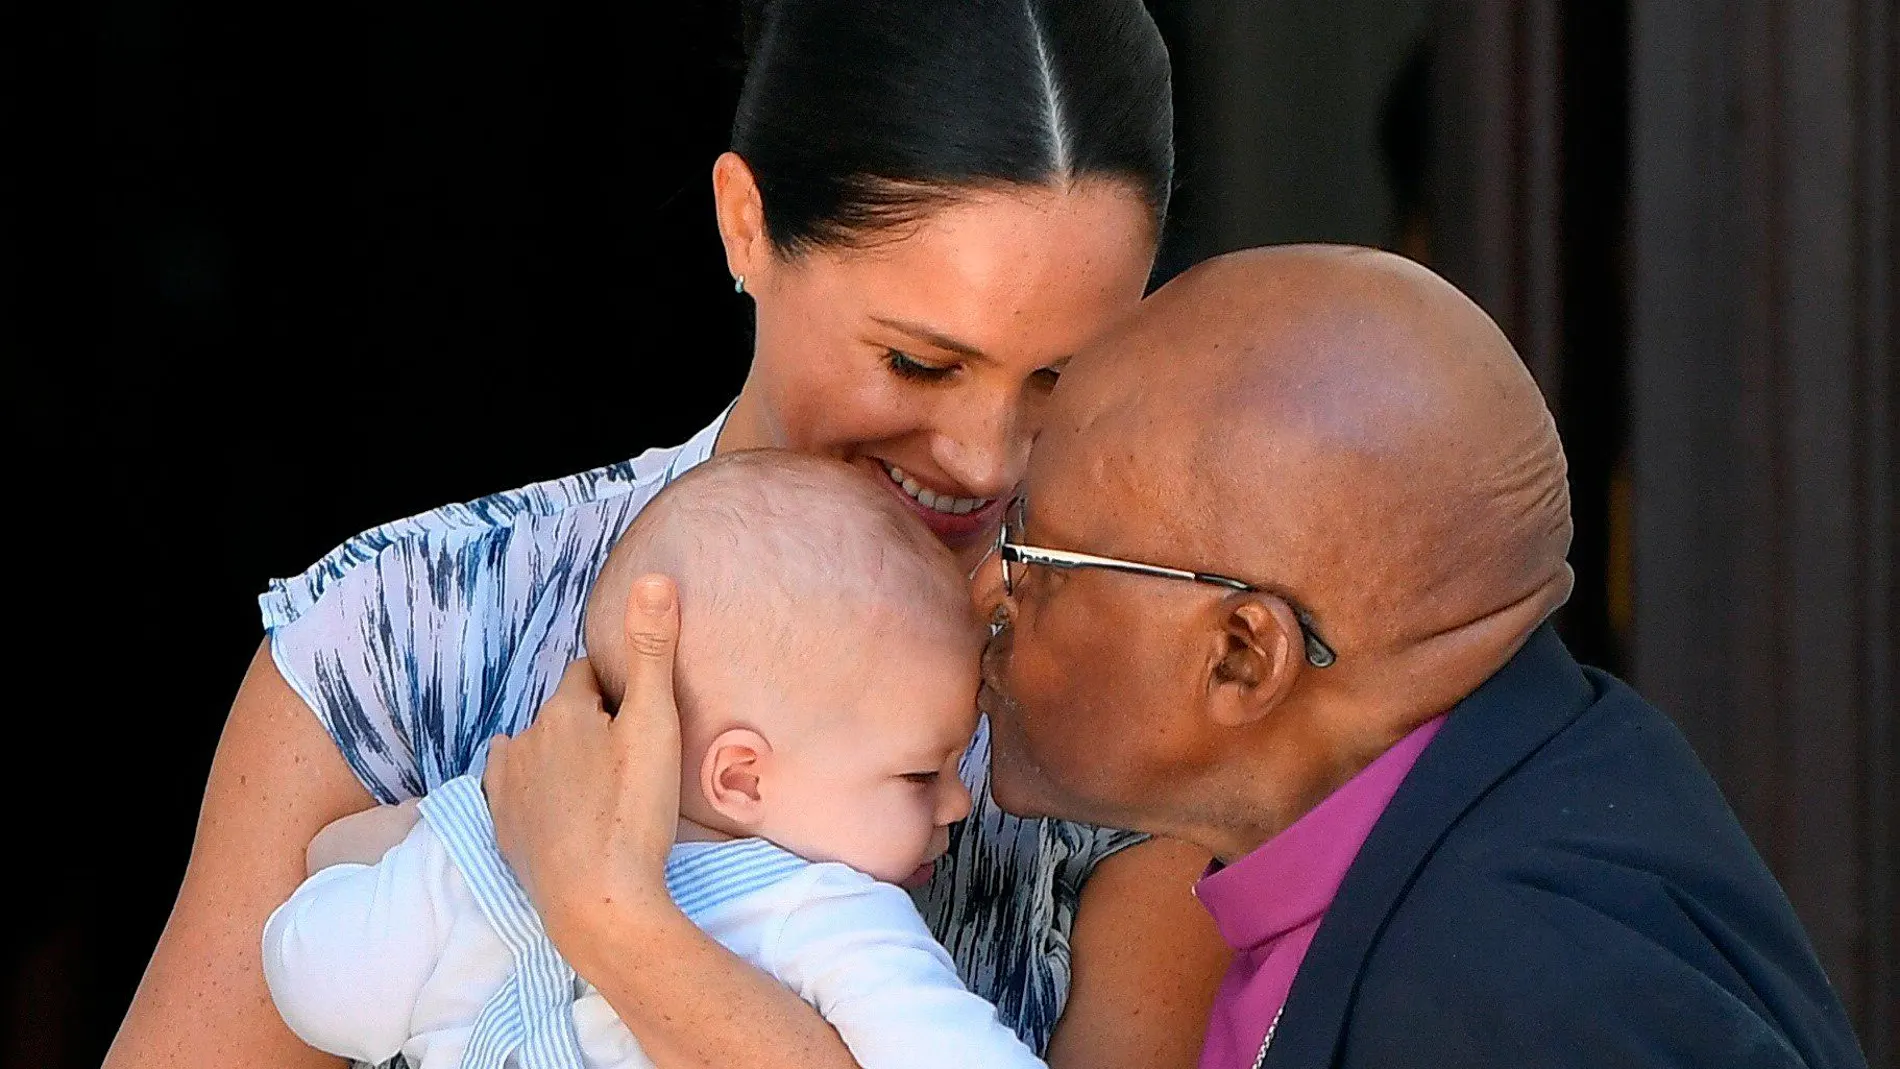 El arzobispo Desmond Tutu besa al pequeño Archie a su llegada a la Fundación